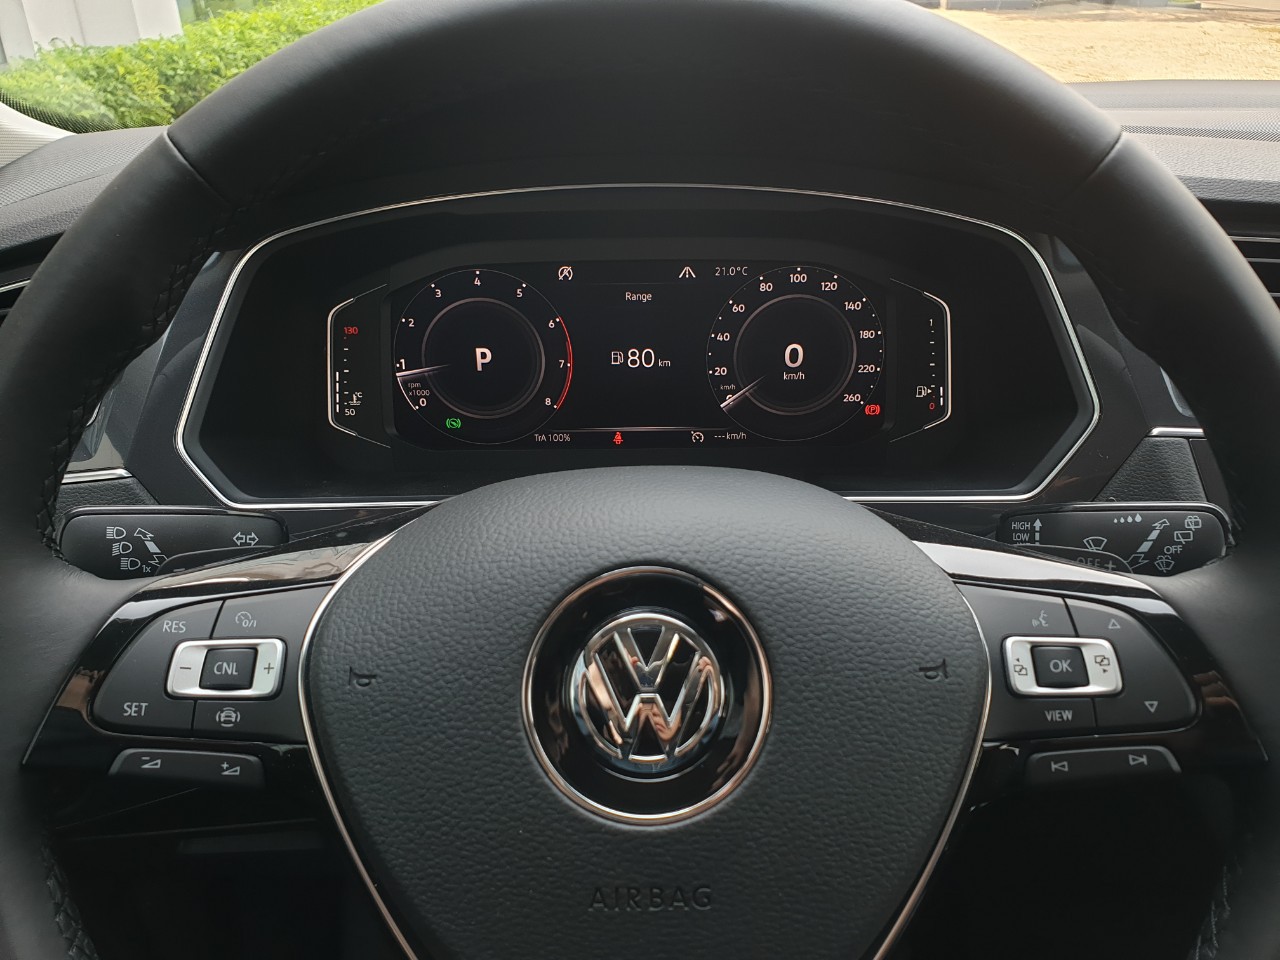 Cần bán Volkswagen Tiguan Elegance năm 2021, màu xám, nhập khẩu nguyên chiếc